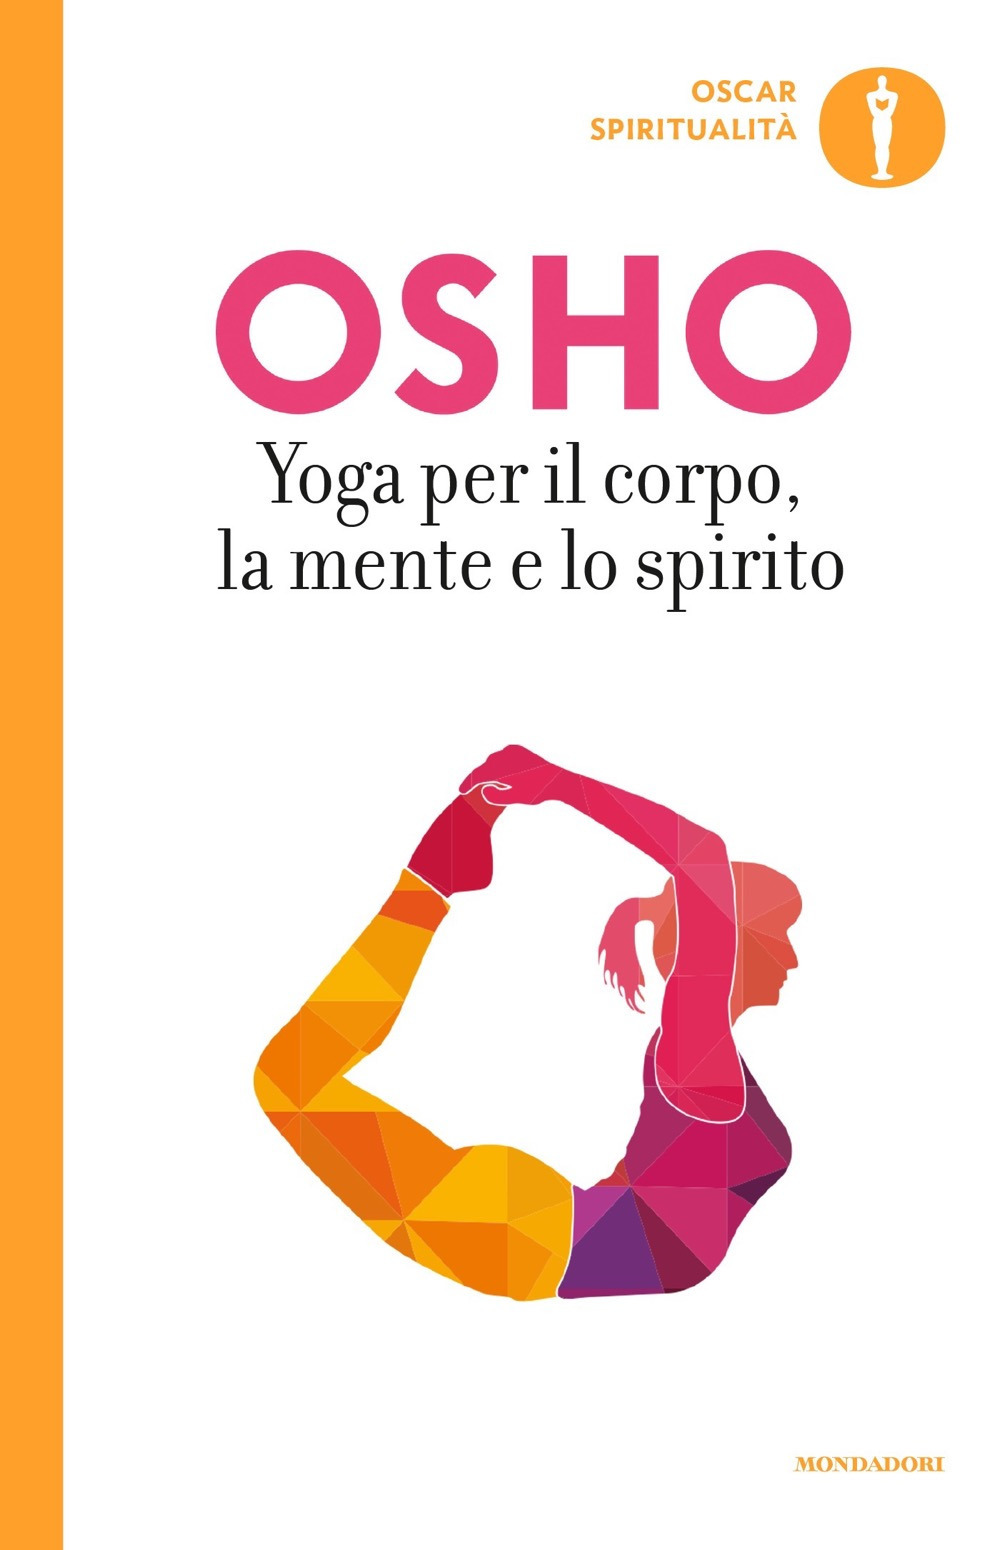 Image of Yoga per il corpo, la mente e lo spirito